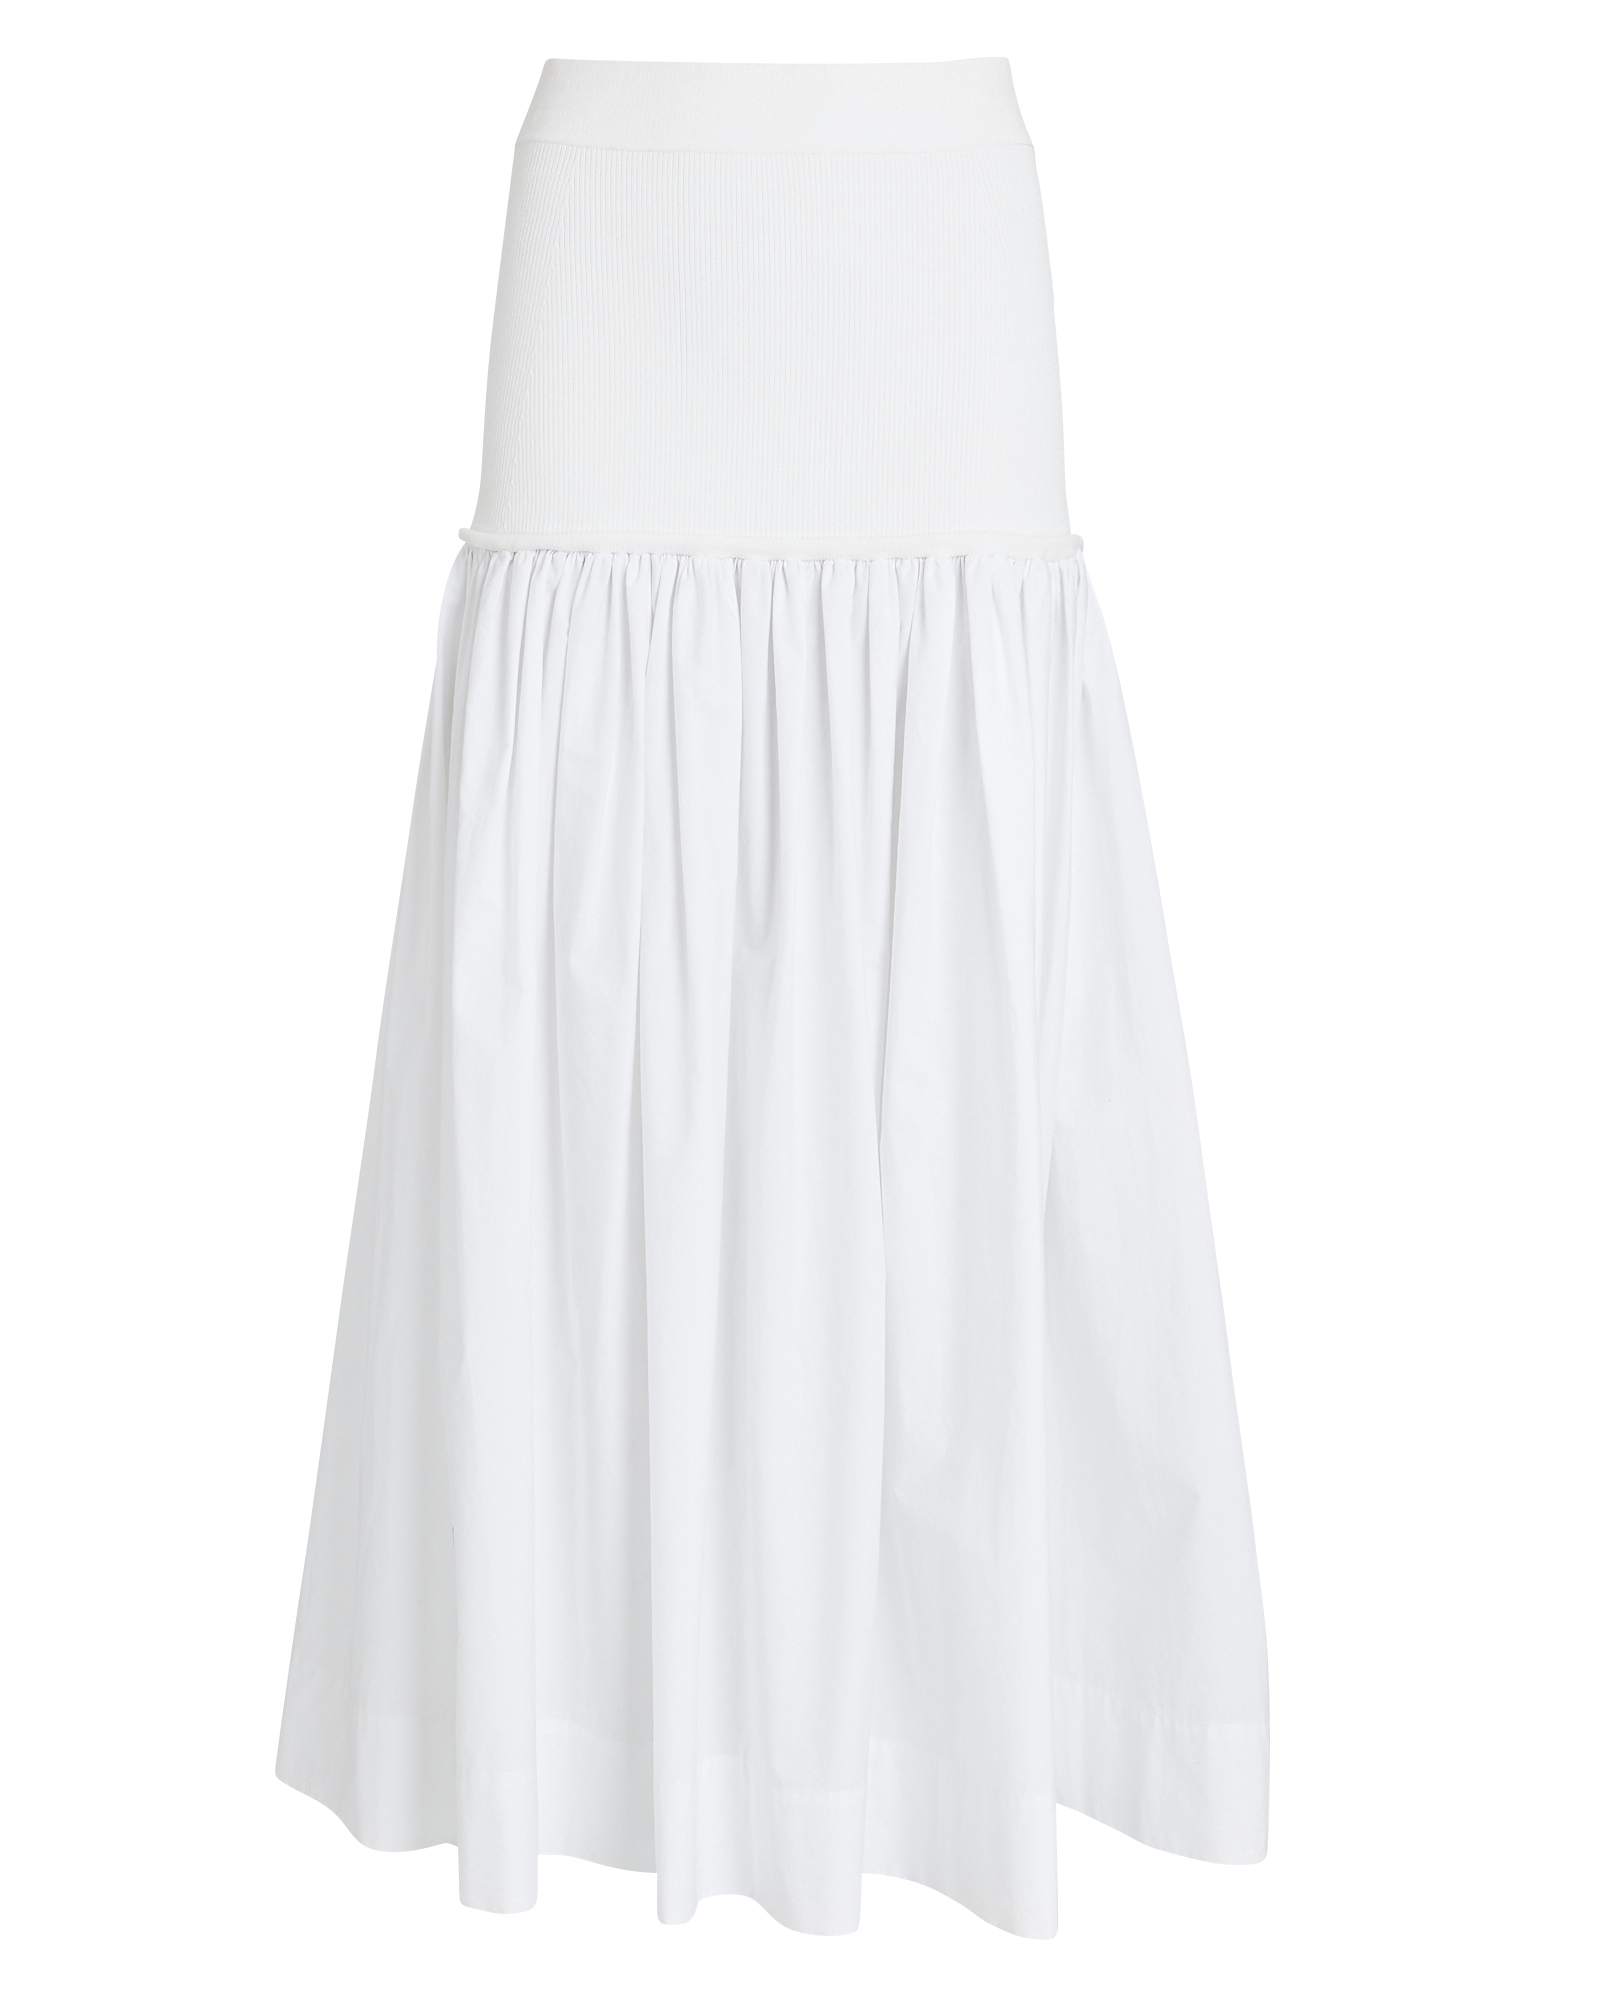 A.L.C. Marlowe Poplin Midi Skirt in white | INTERMIX®